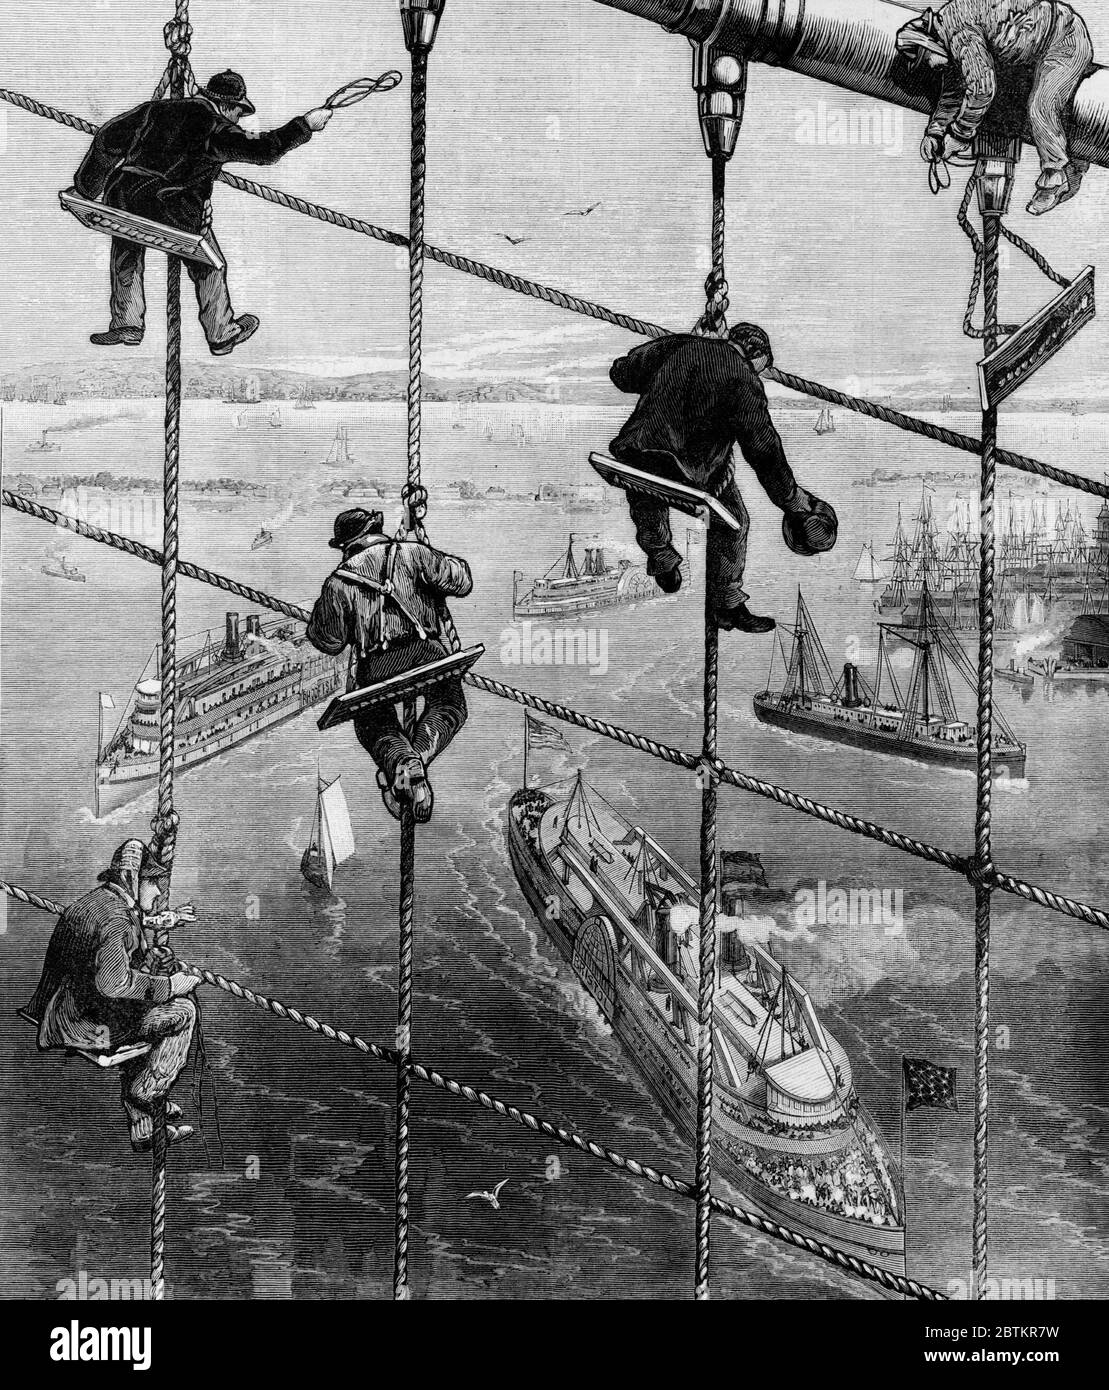 New York City - Abschluss einer großartigen Arbeit - Zurrlashing the Stays of the Brooklyn Bridge - 1883 Stockfoto